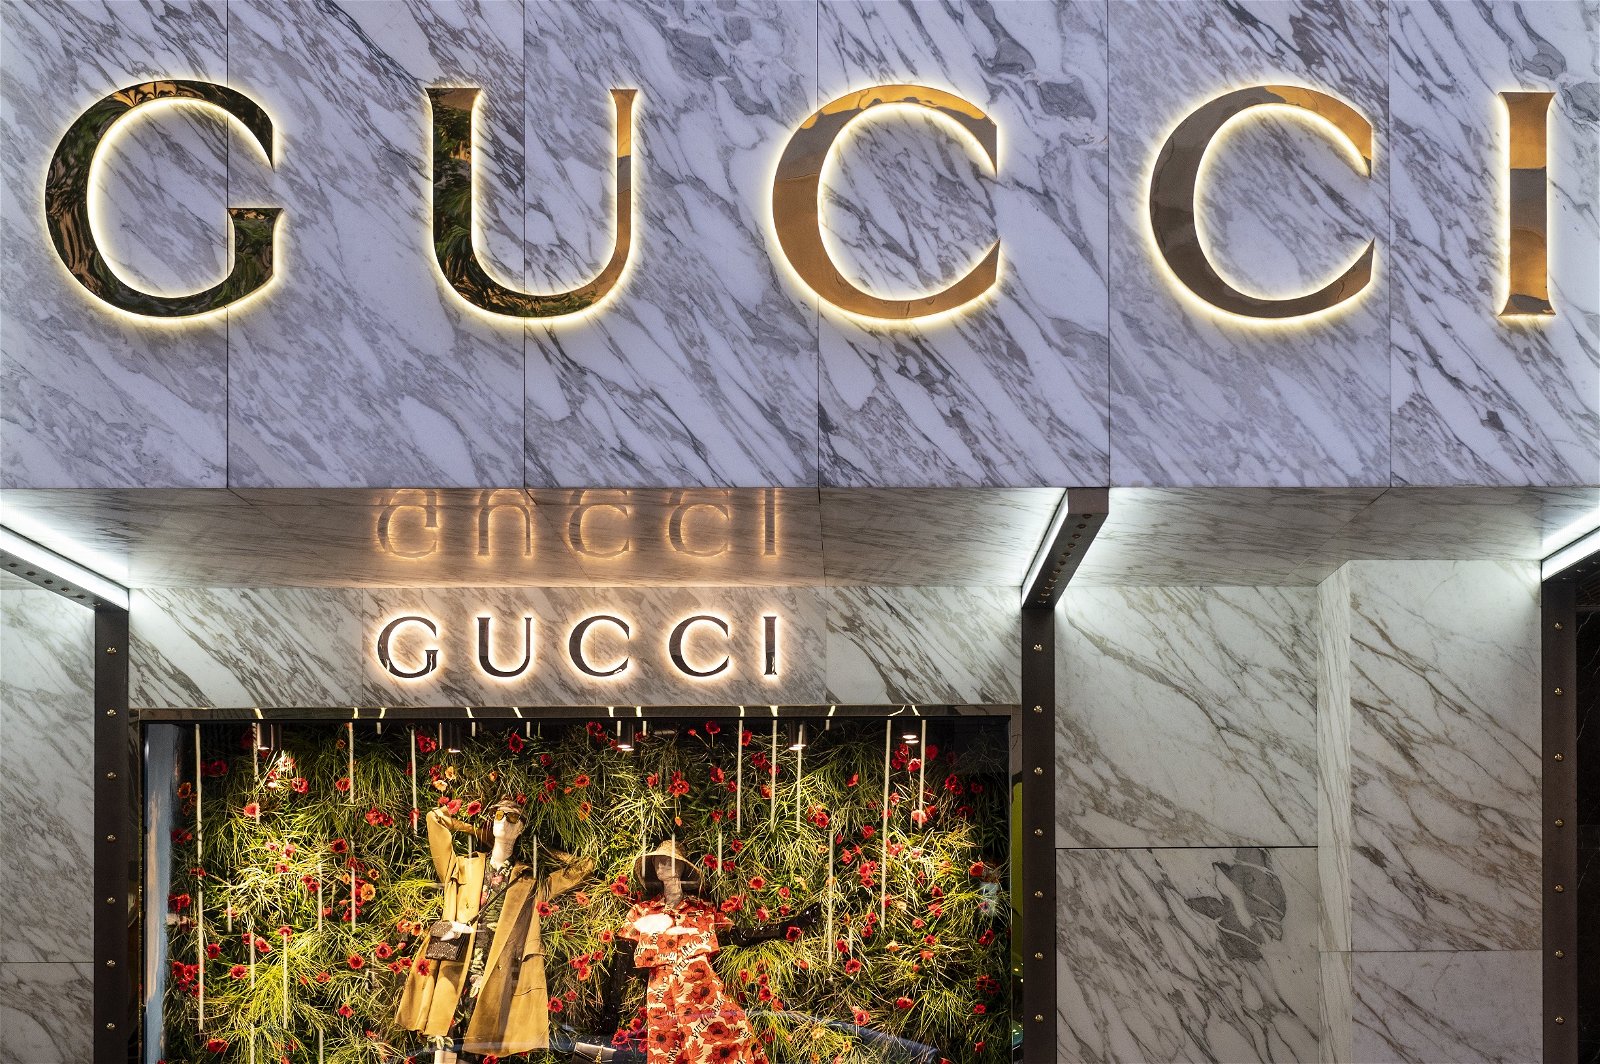 As neef wapen Gucci lanceert schoenen voor 13 euro, al zijn ze een tikkeltje ongewoon -  Business AM